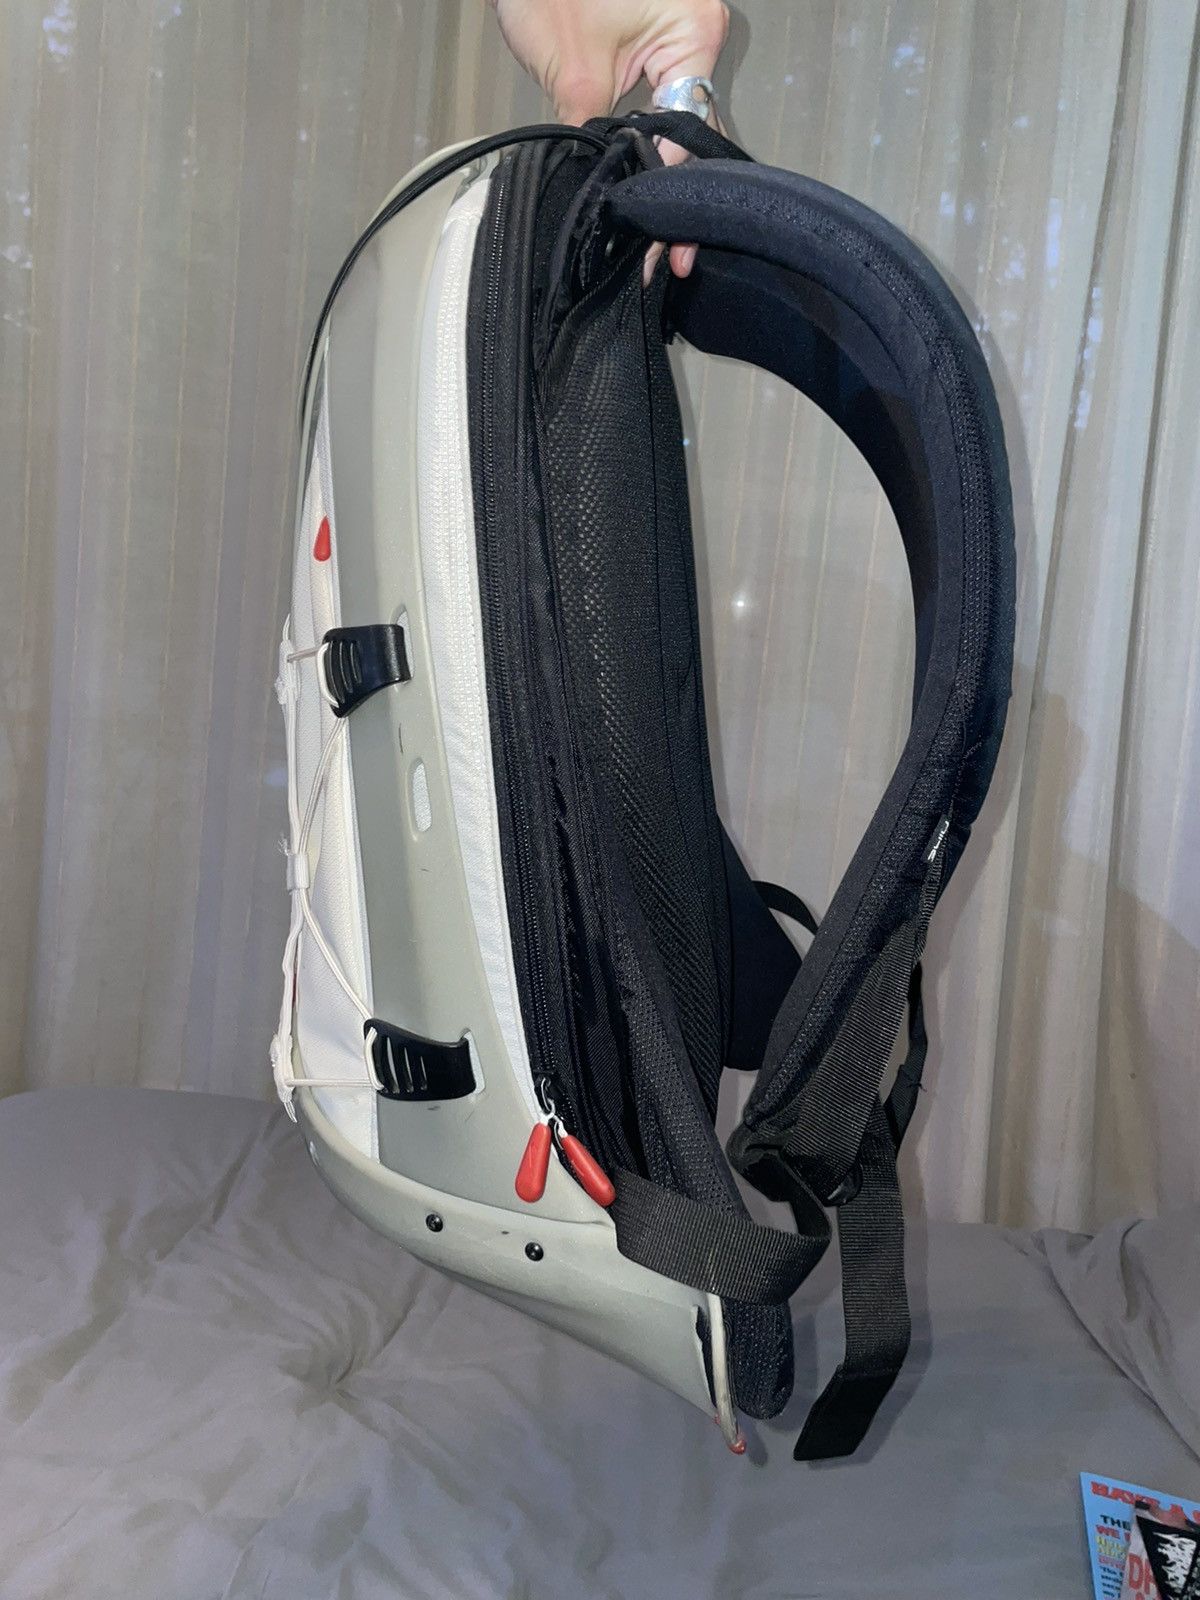 Nike Nike Epic Hard Case Backpack | Grailed